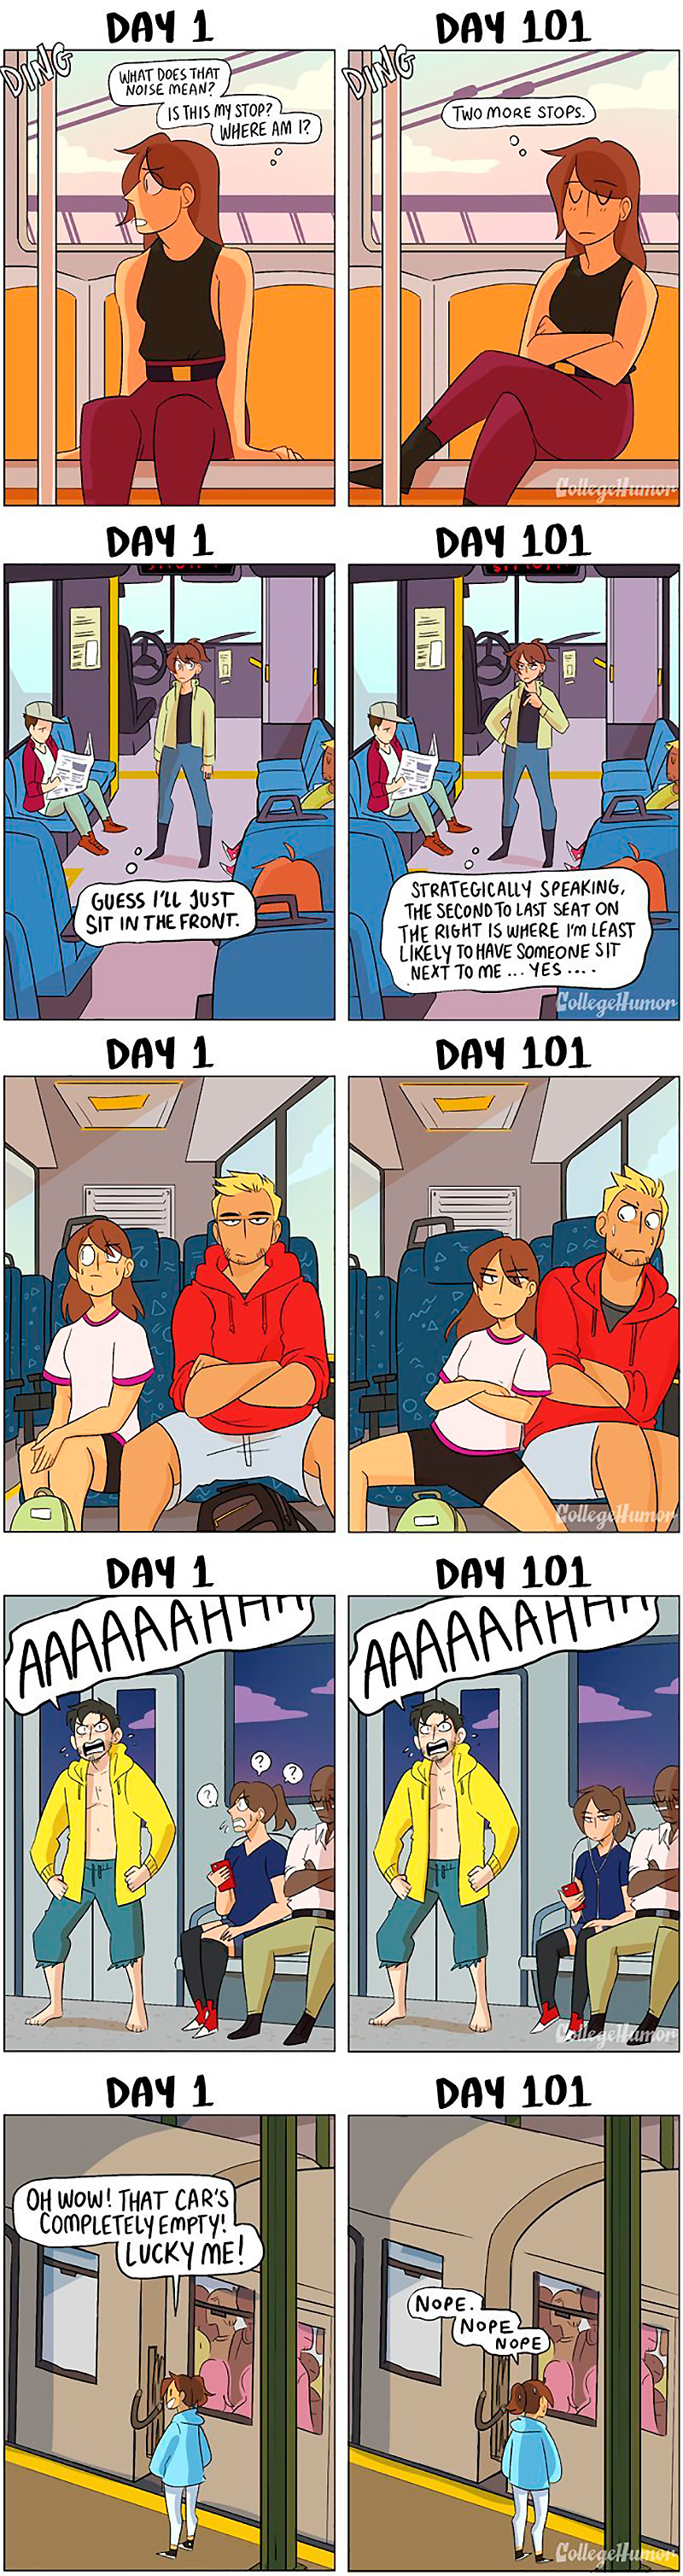 Public transport in a nutshell